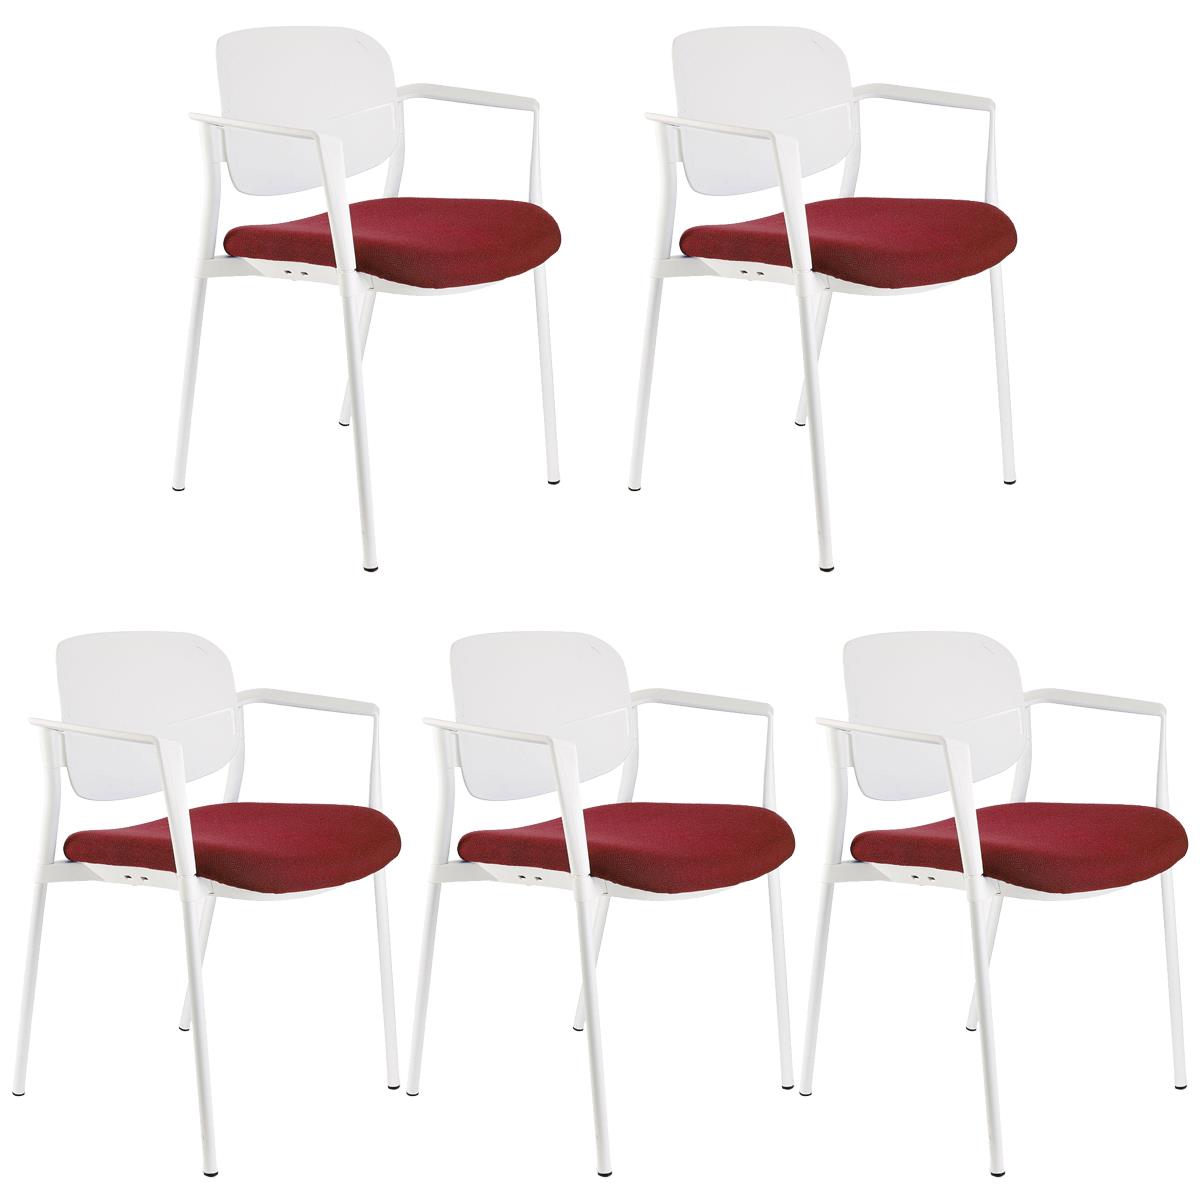 Lote de 5 sillas de Confidente ERIC, Cómodas y Prácticas, Apilables, Color Burdeos